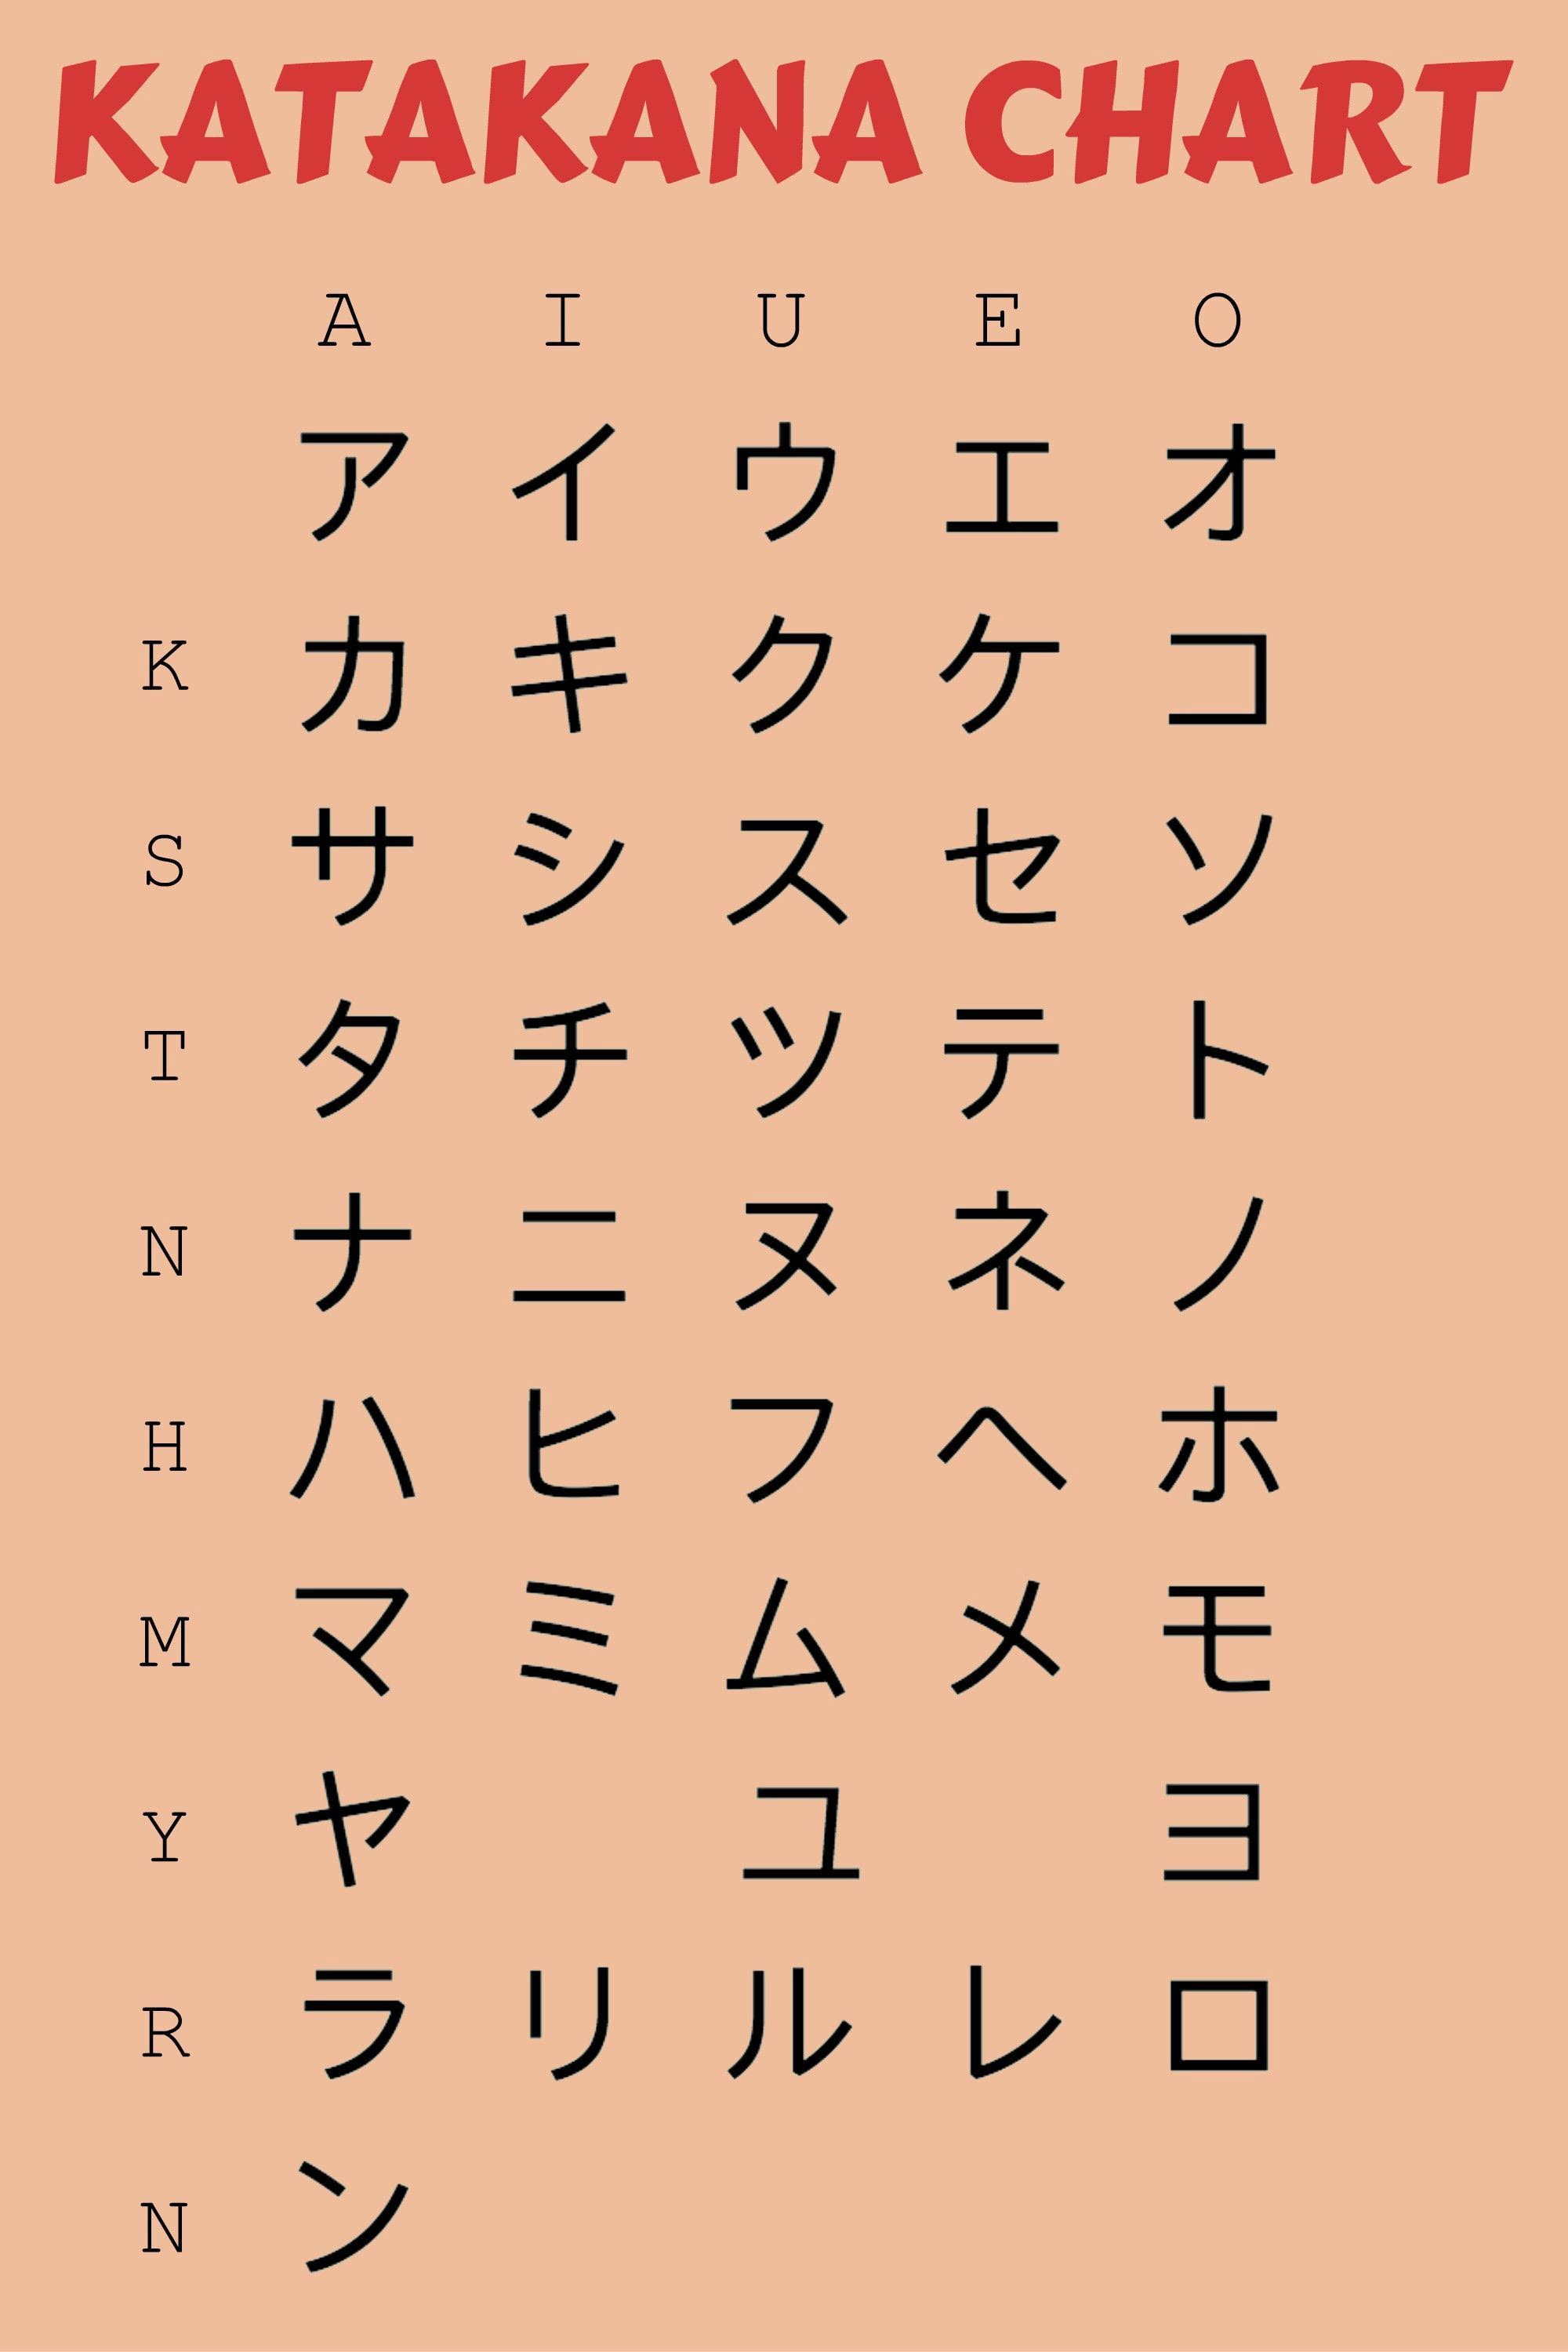 Bảng chữ cái Katakana Nhật Bản đơn giản đẹp